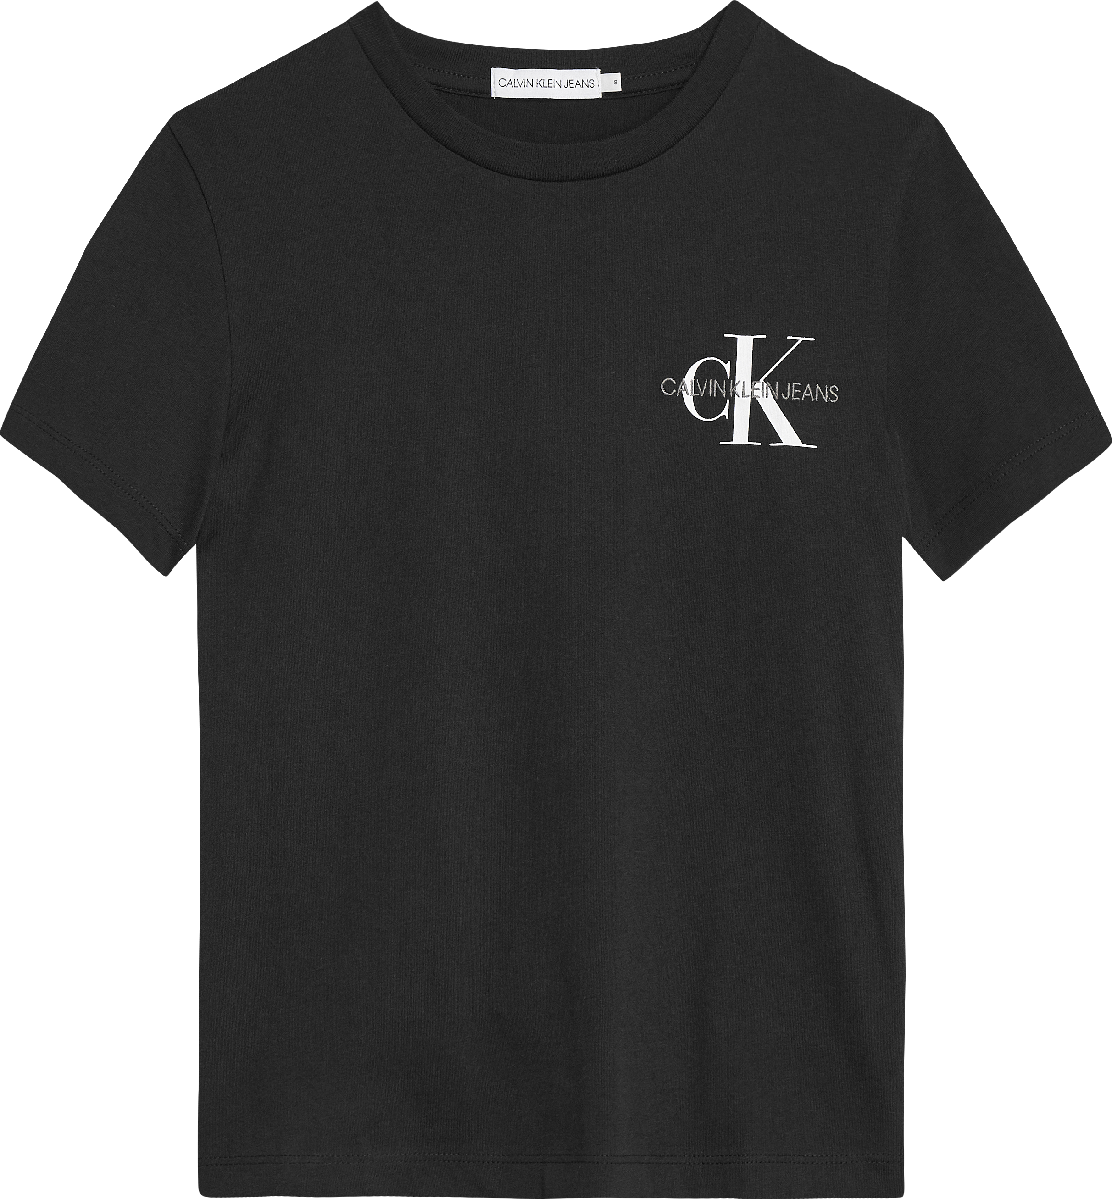 Jongens CHEST MONOGRAM TOP T-SHIRT van Calvin Klein in de kleur Ck Black in maat 176.